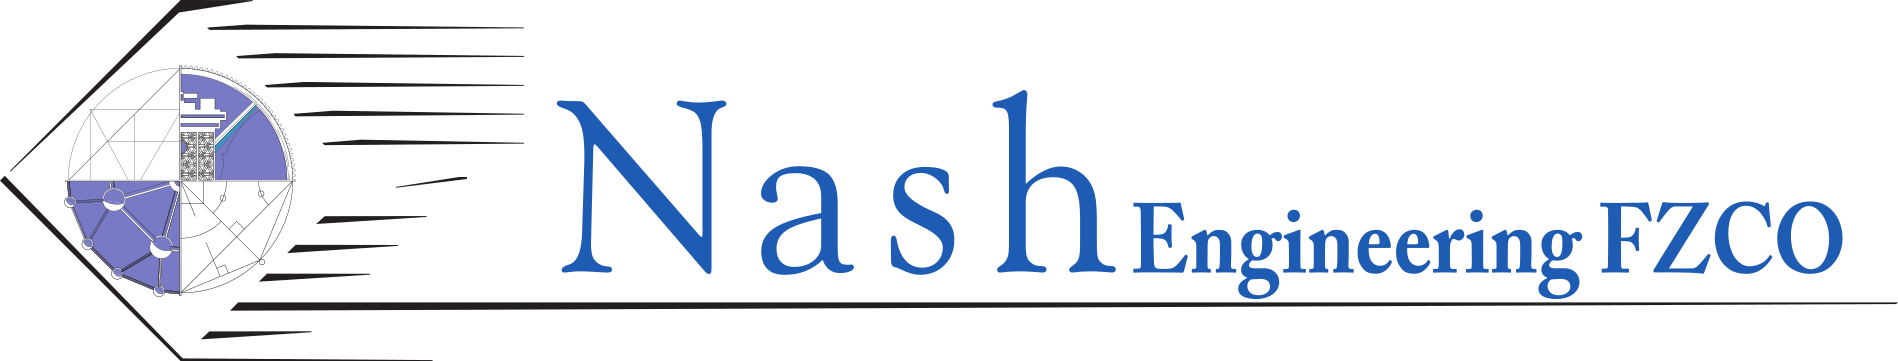 Nash-eng-fzco-logo